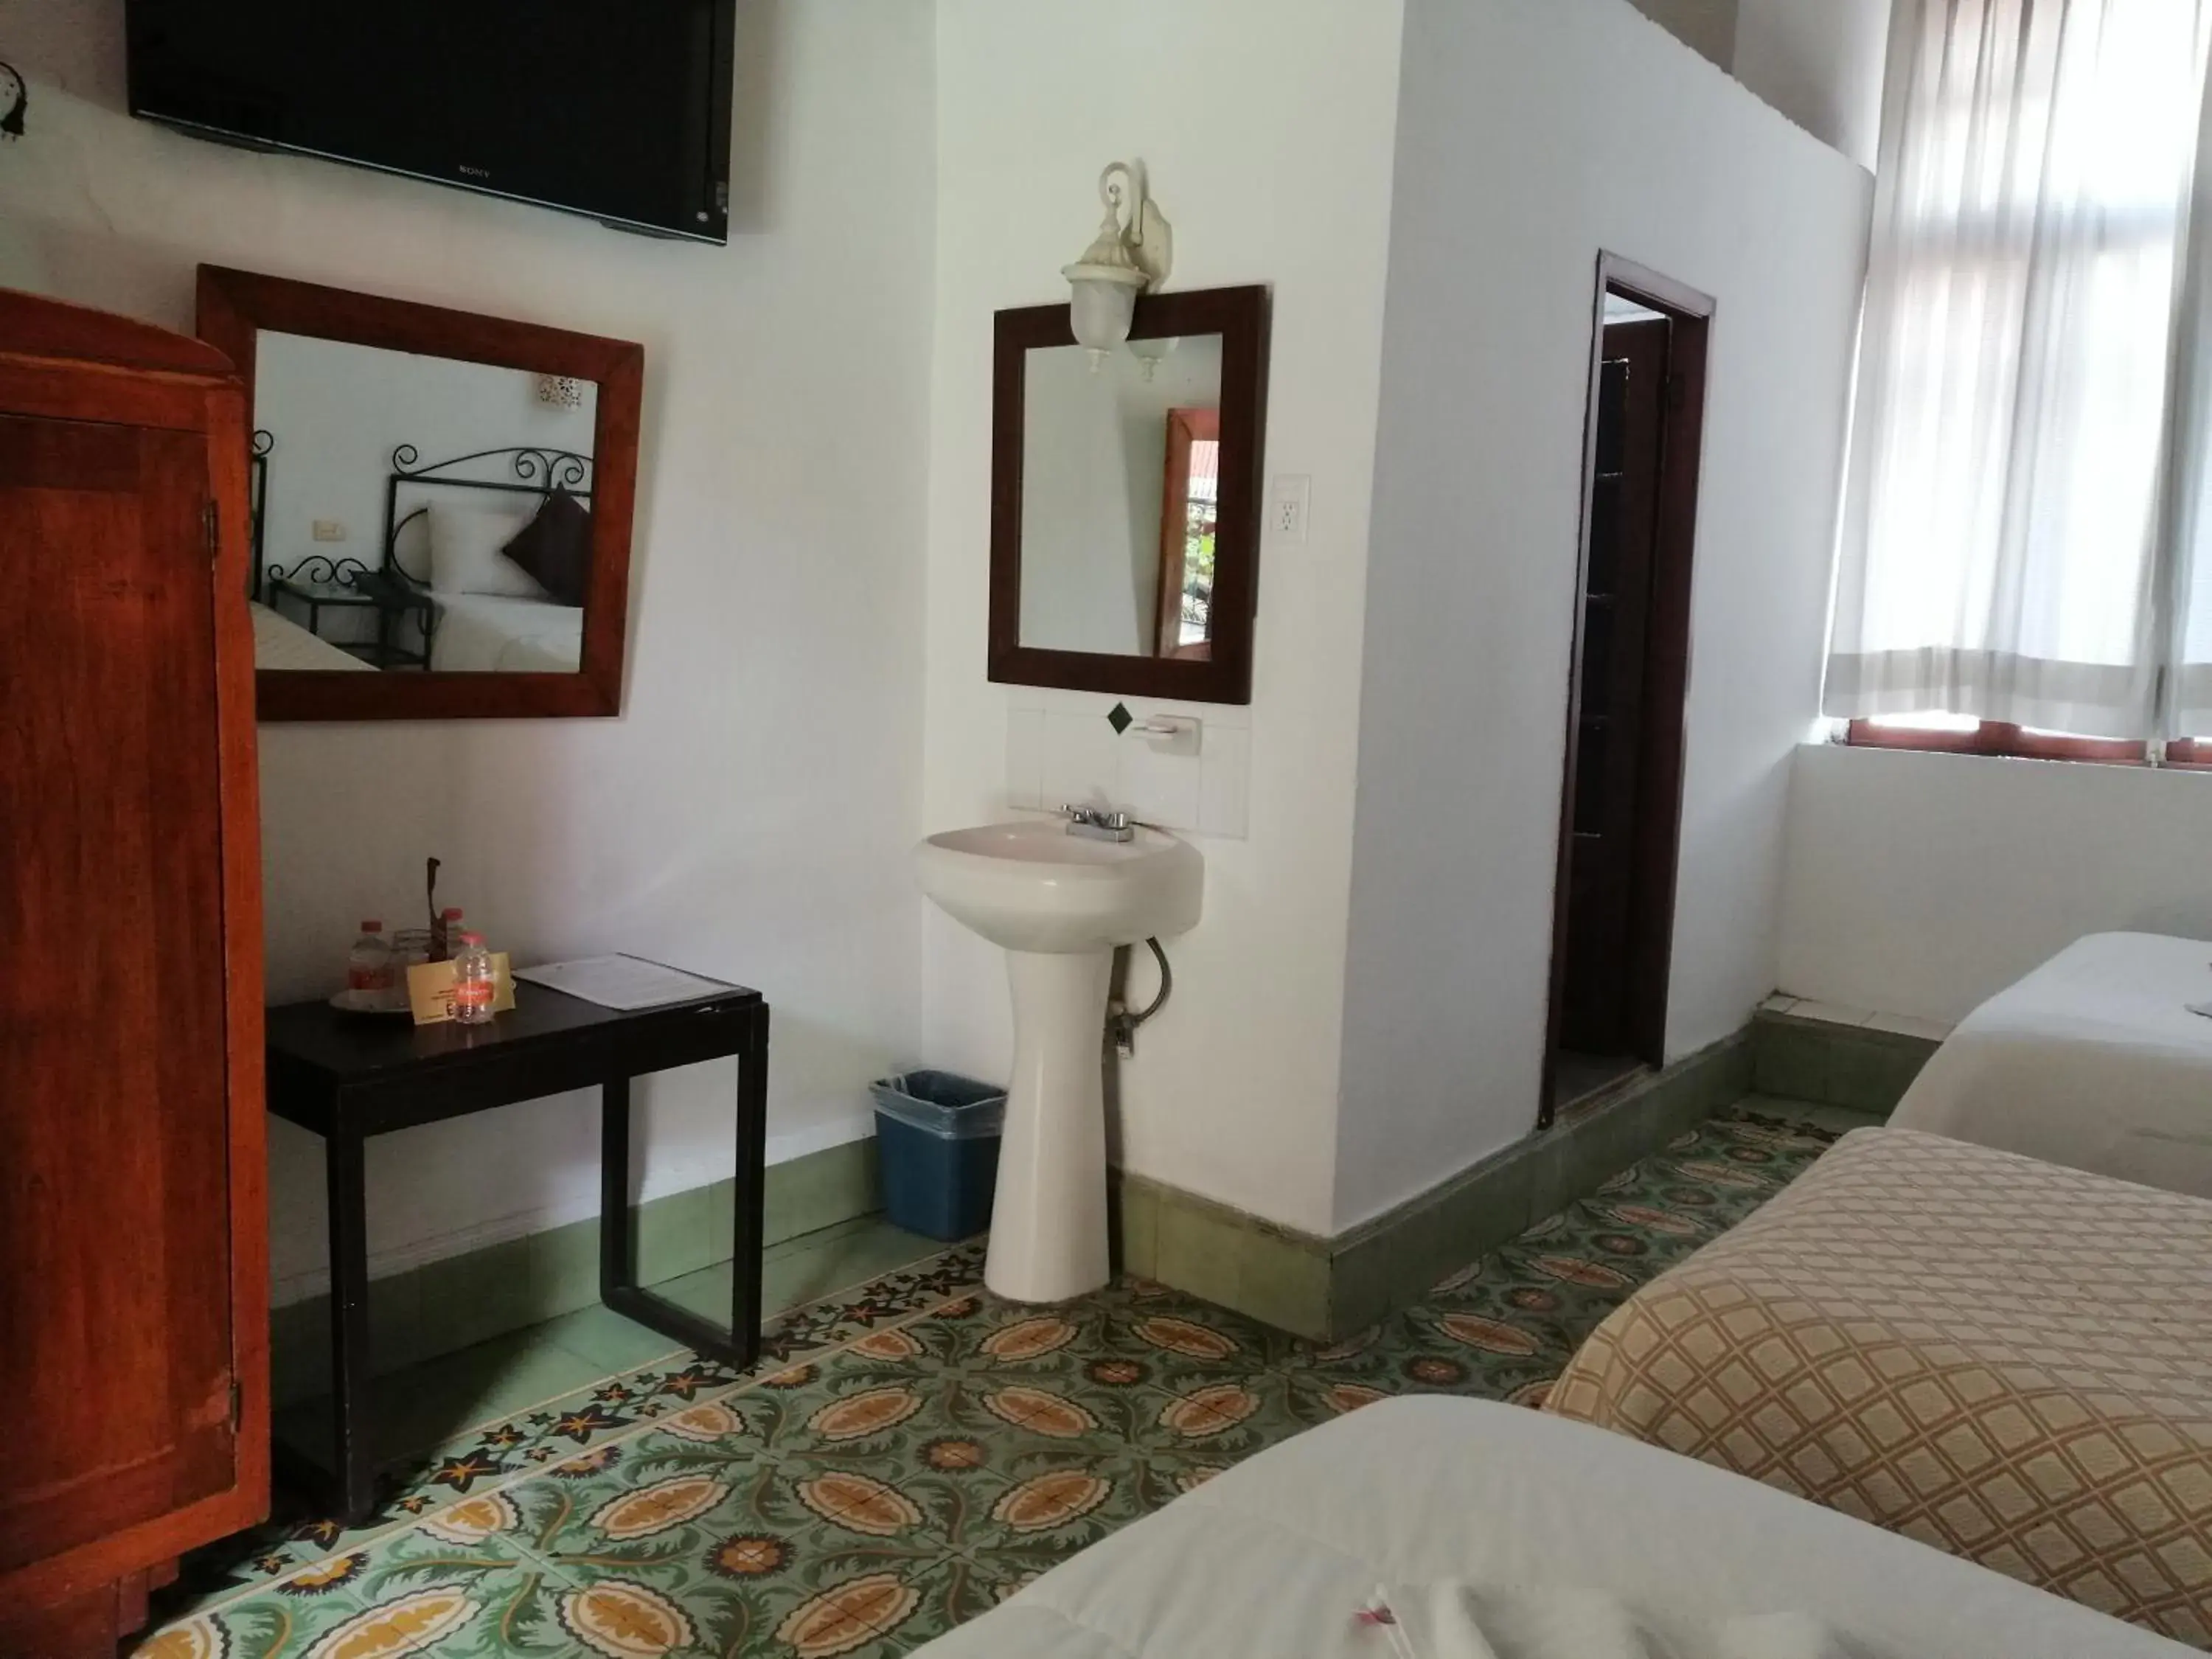 Bathroom in Hotel Reforma